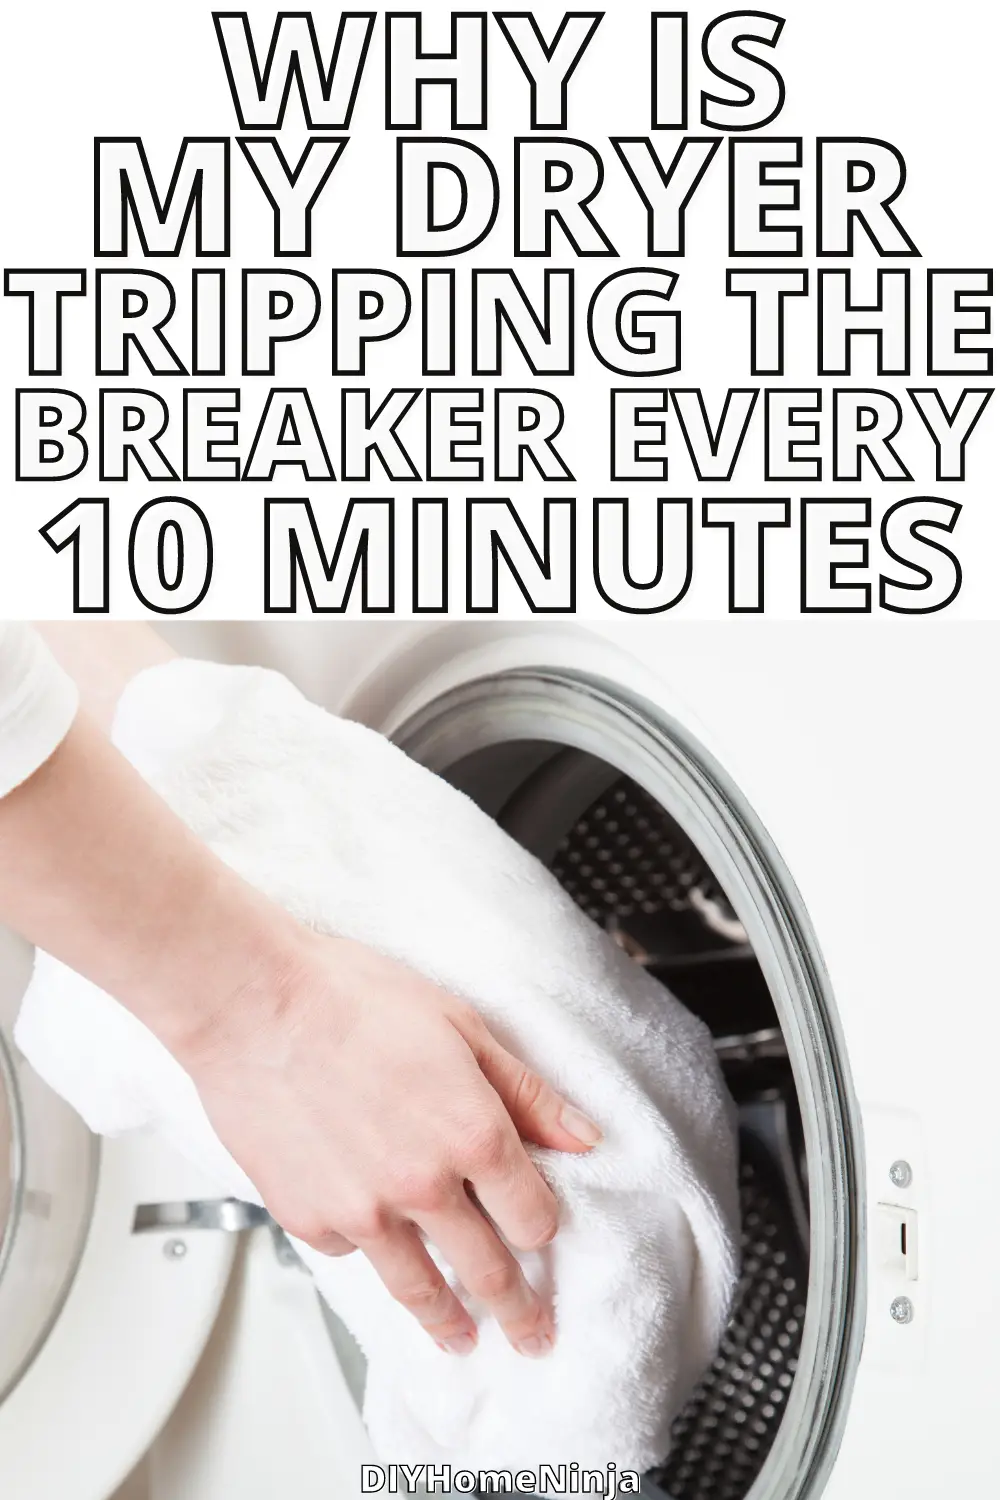 samsung dryer trips breaker immediately